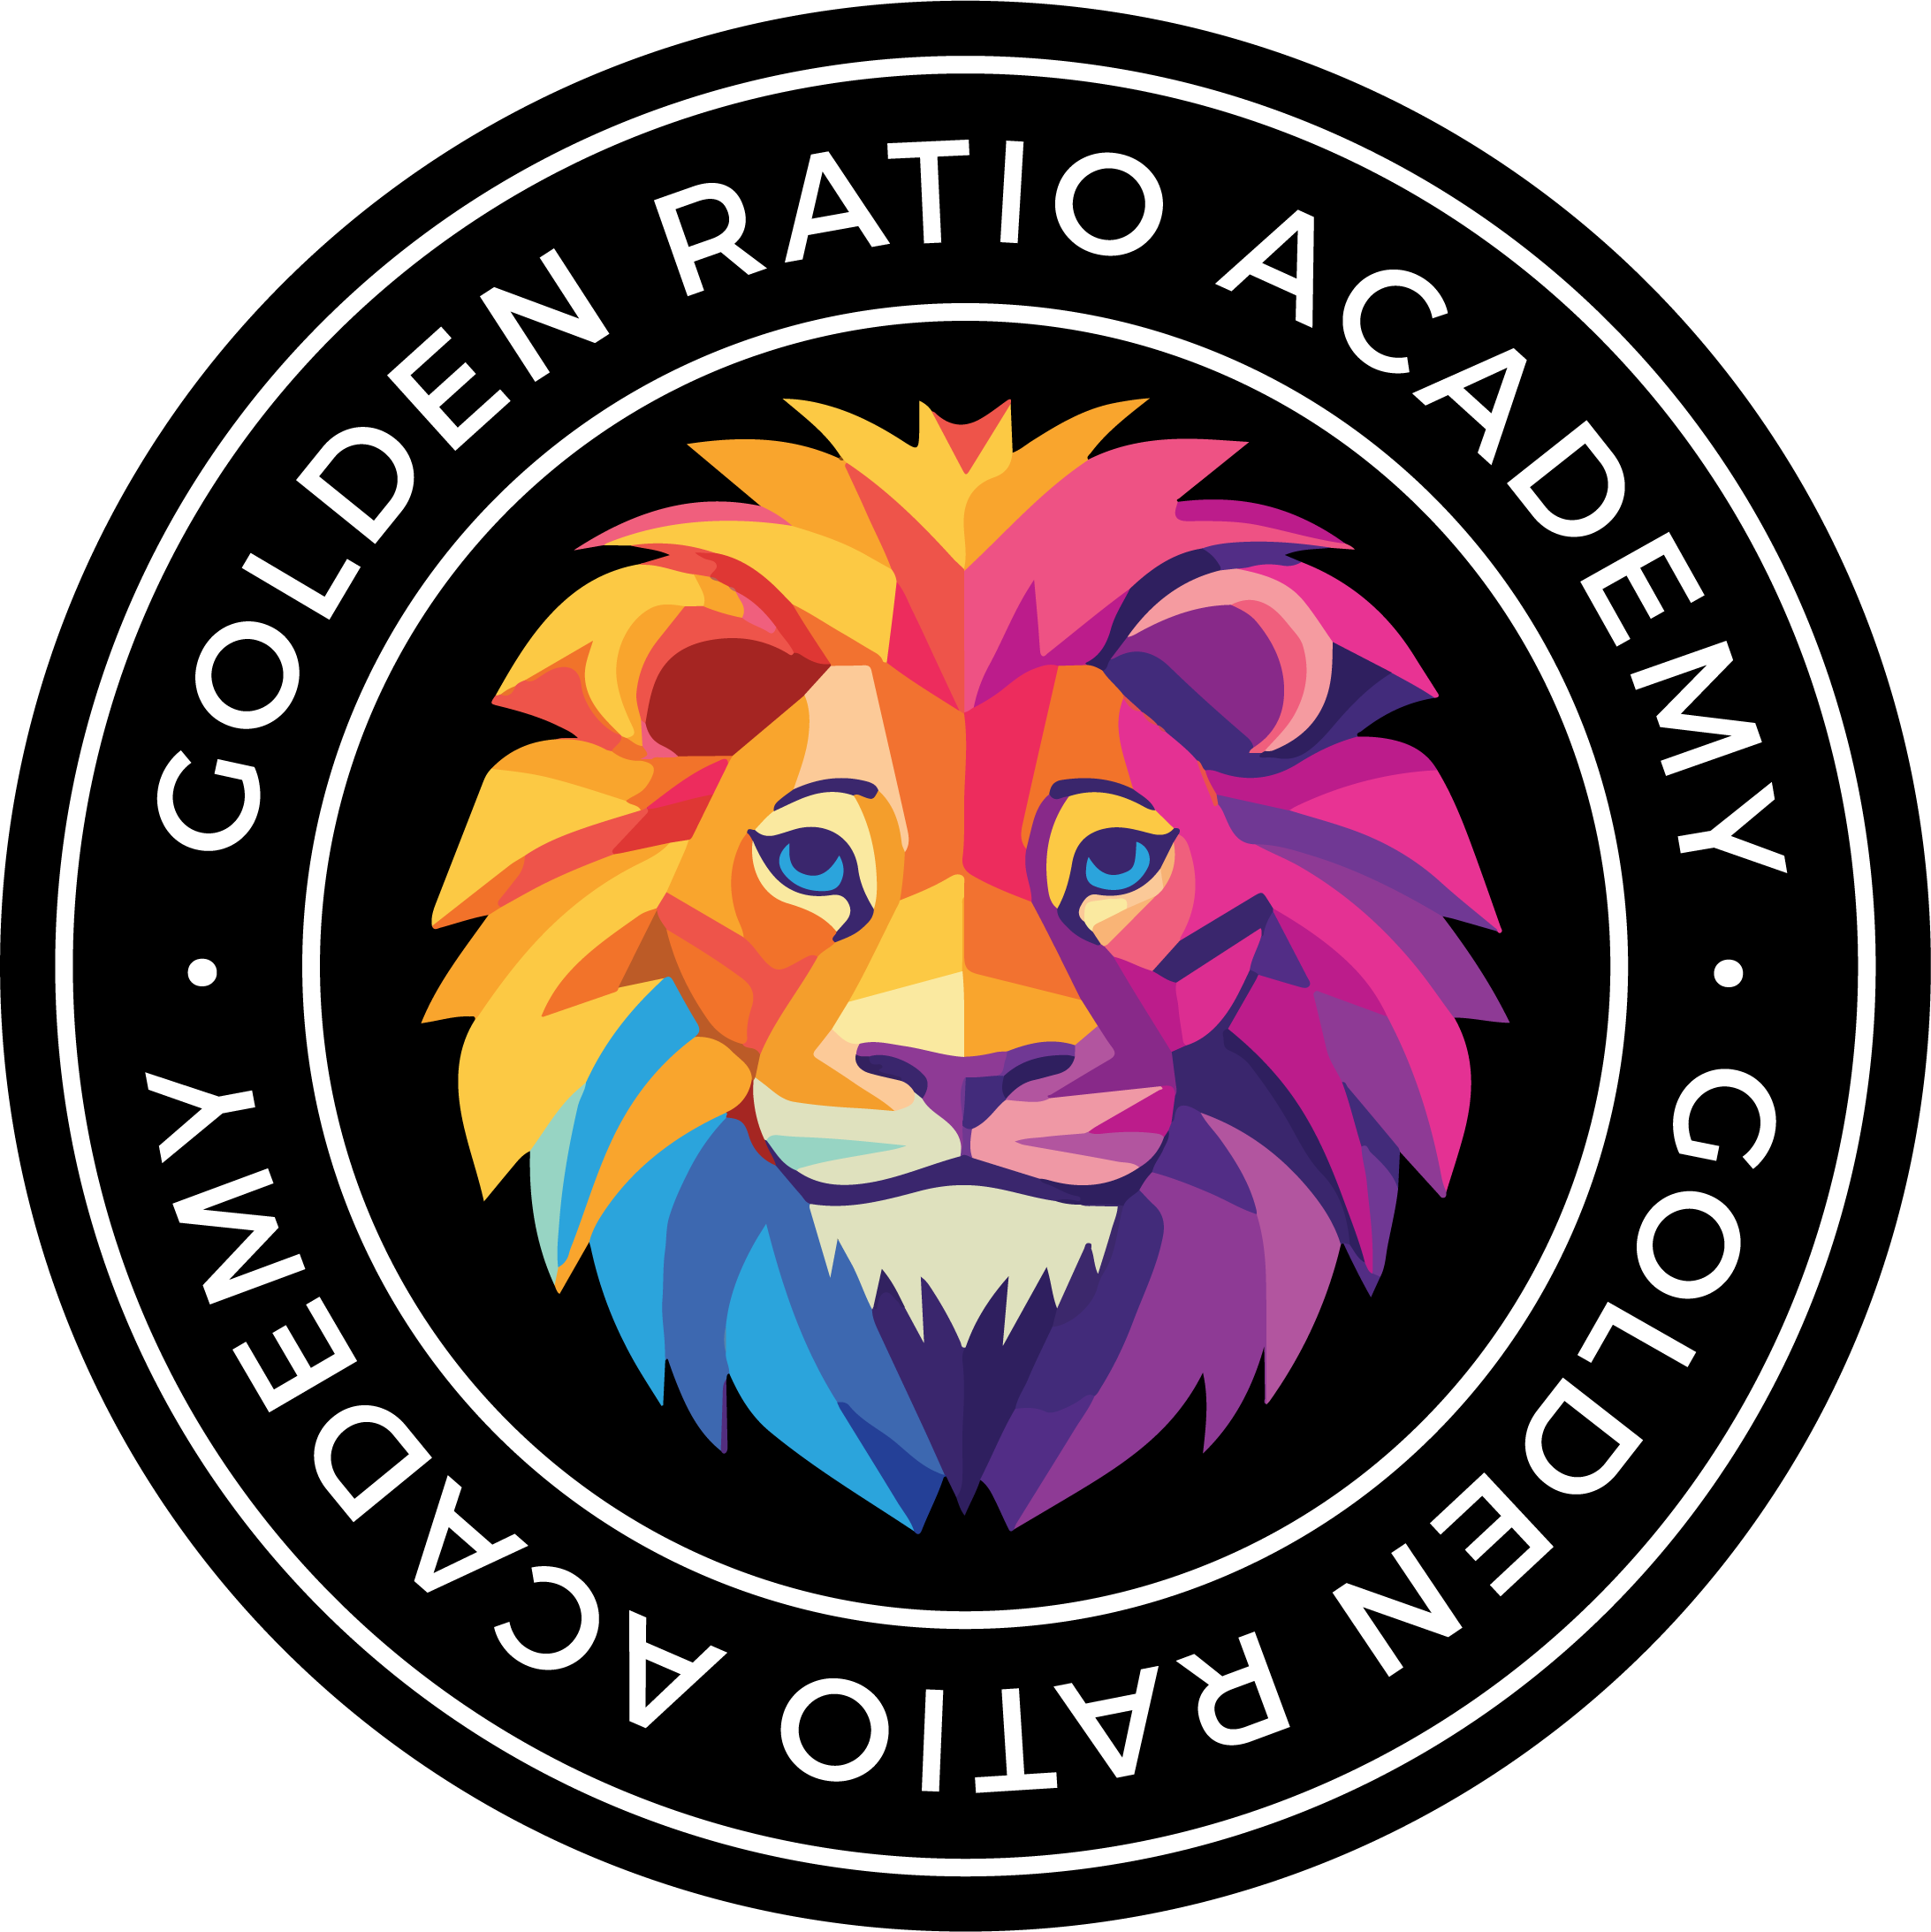 Golden Ratio Academy